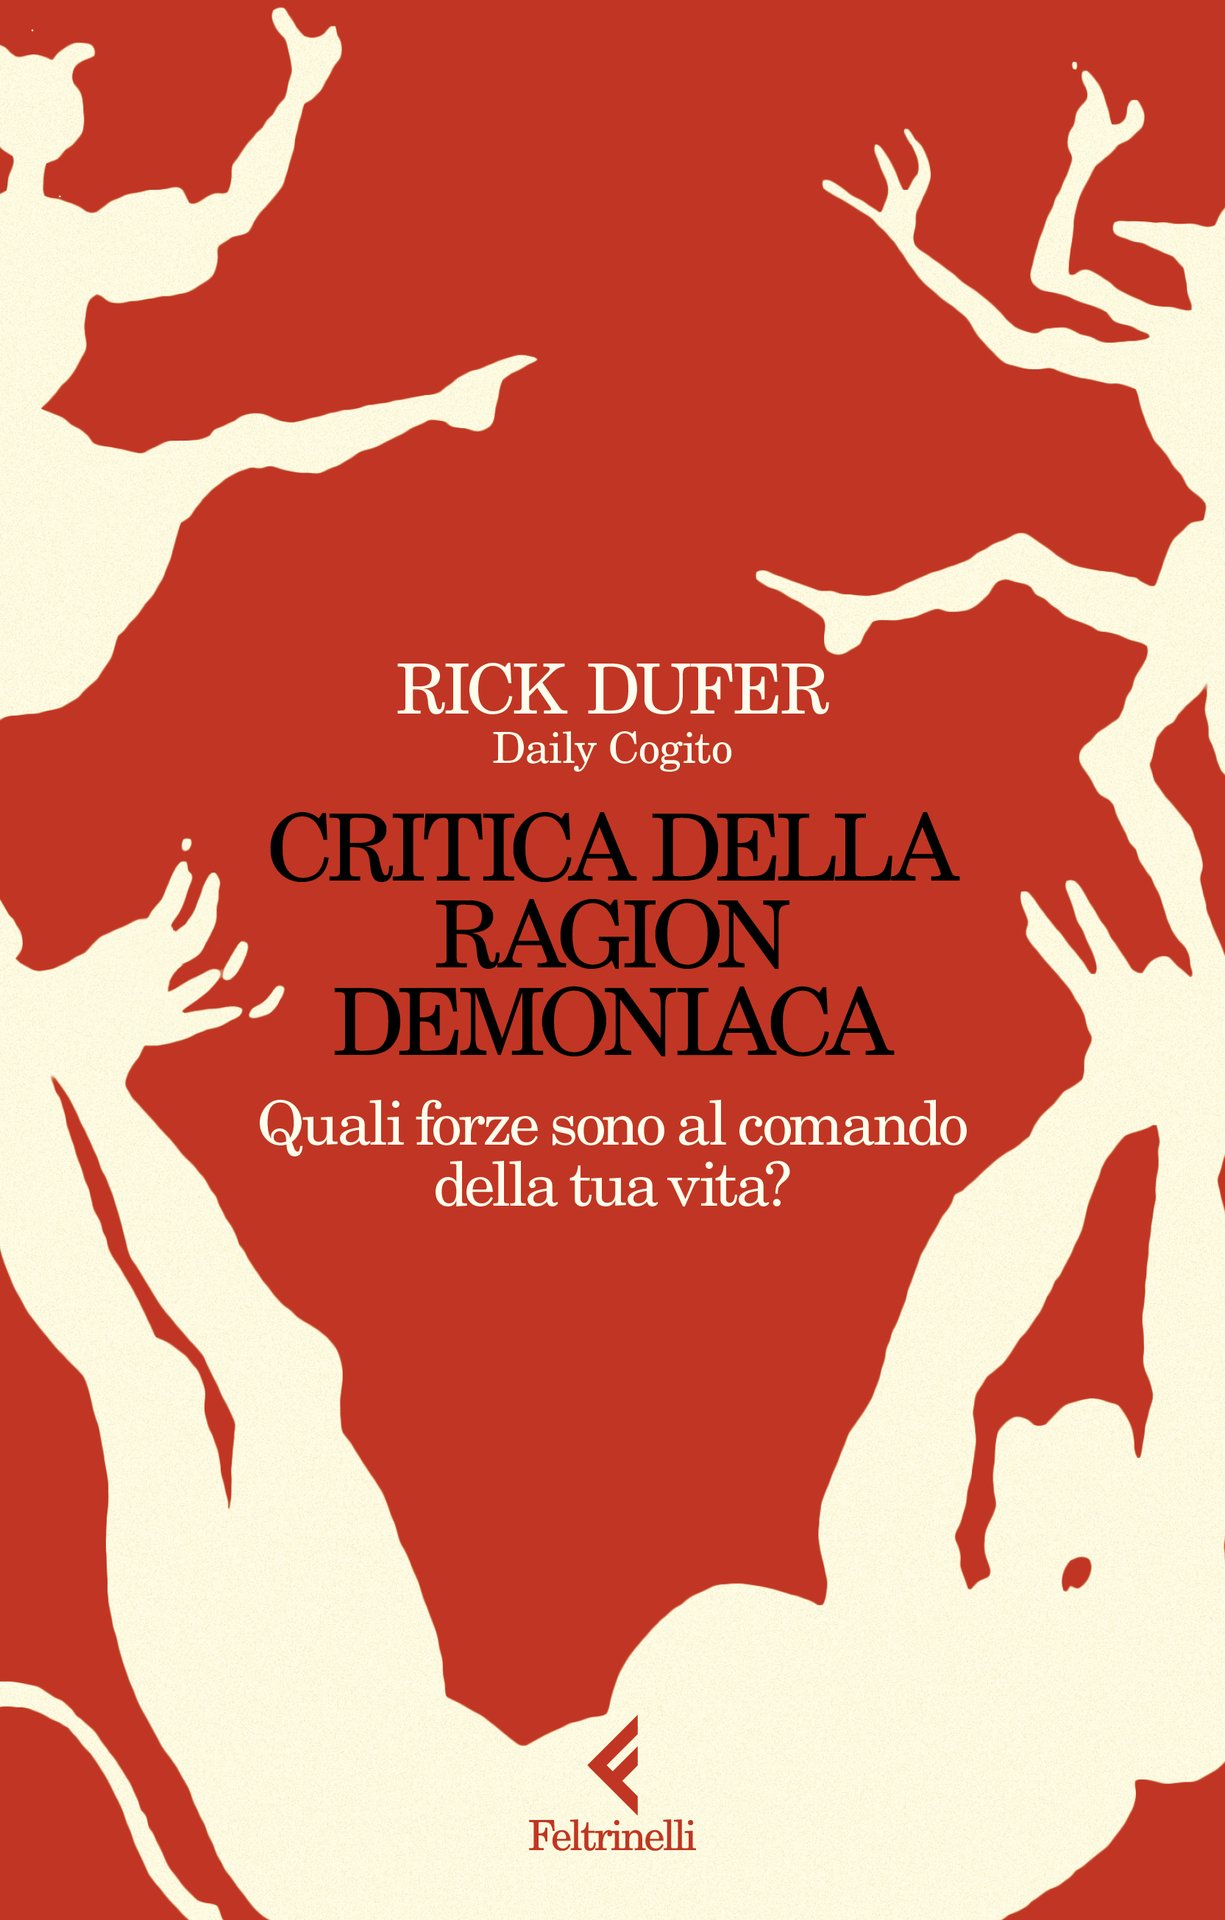 Rick DuFer presenta "Critica della ragion demoniaca" alla Feltrinelli Firenze